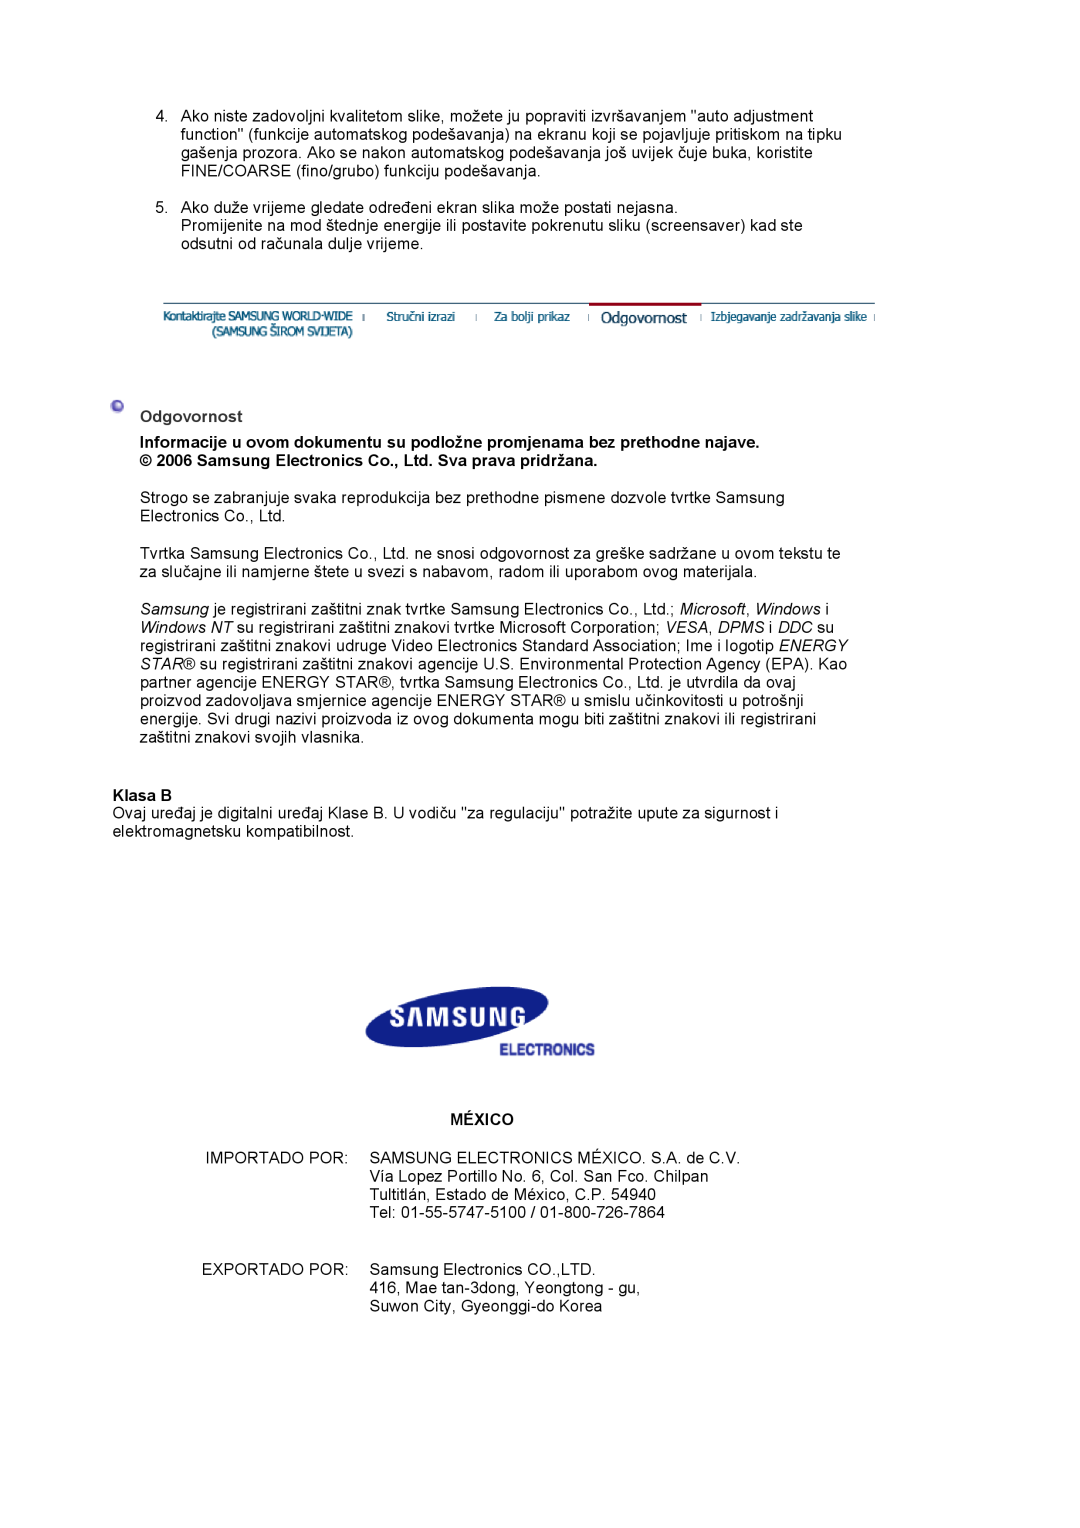 Samsung LS17MJVKS/EDC manual Odgovornost, Klasa B, México 